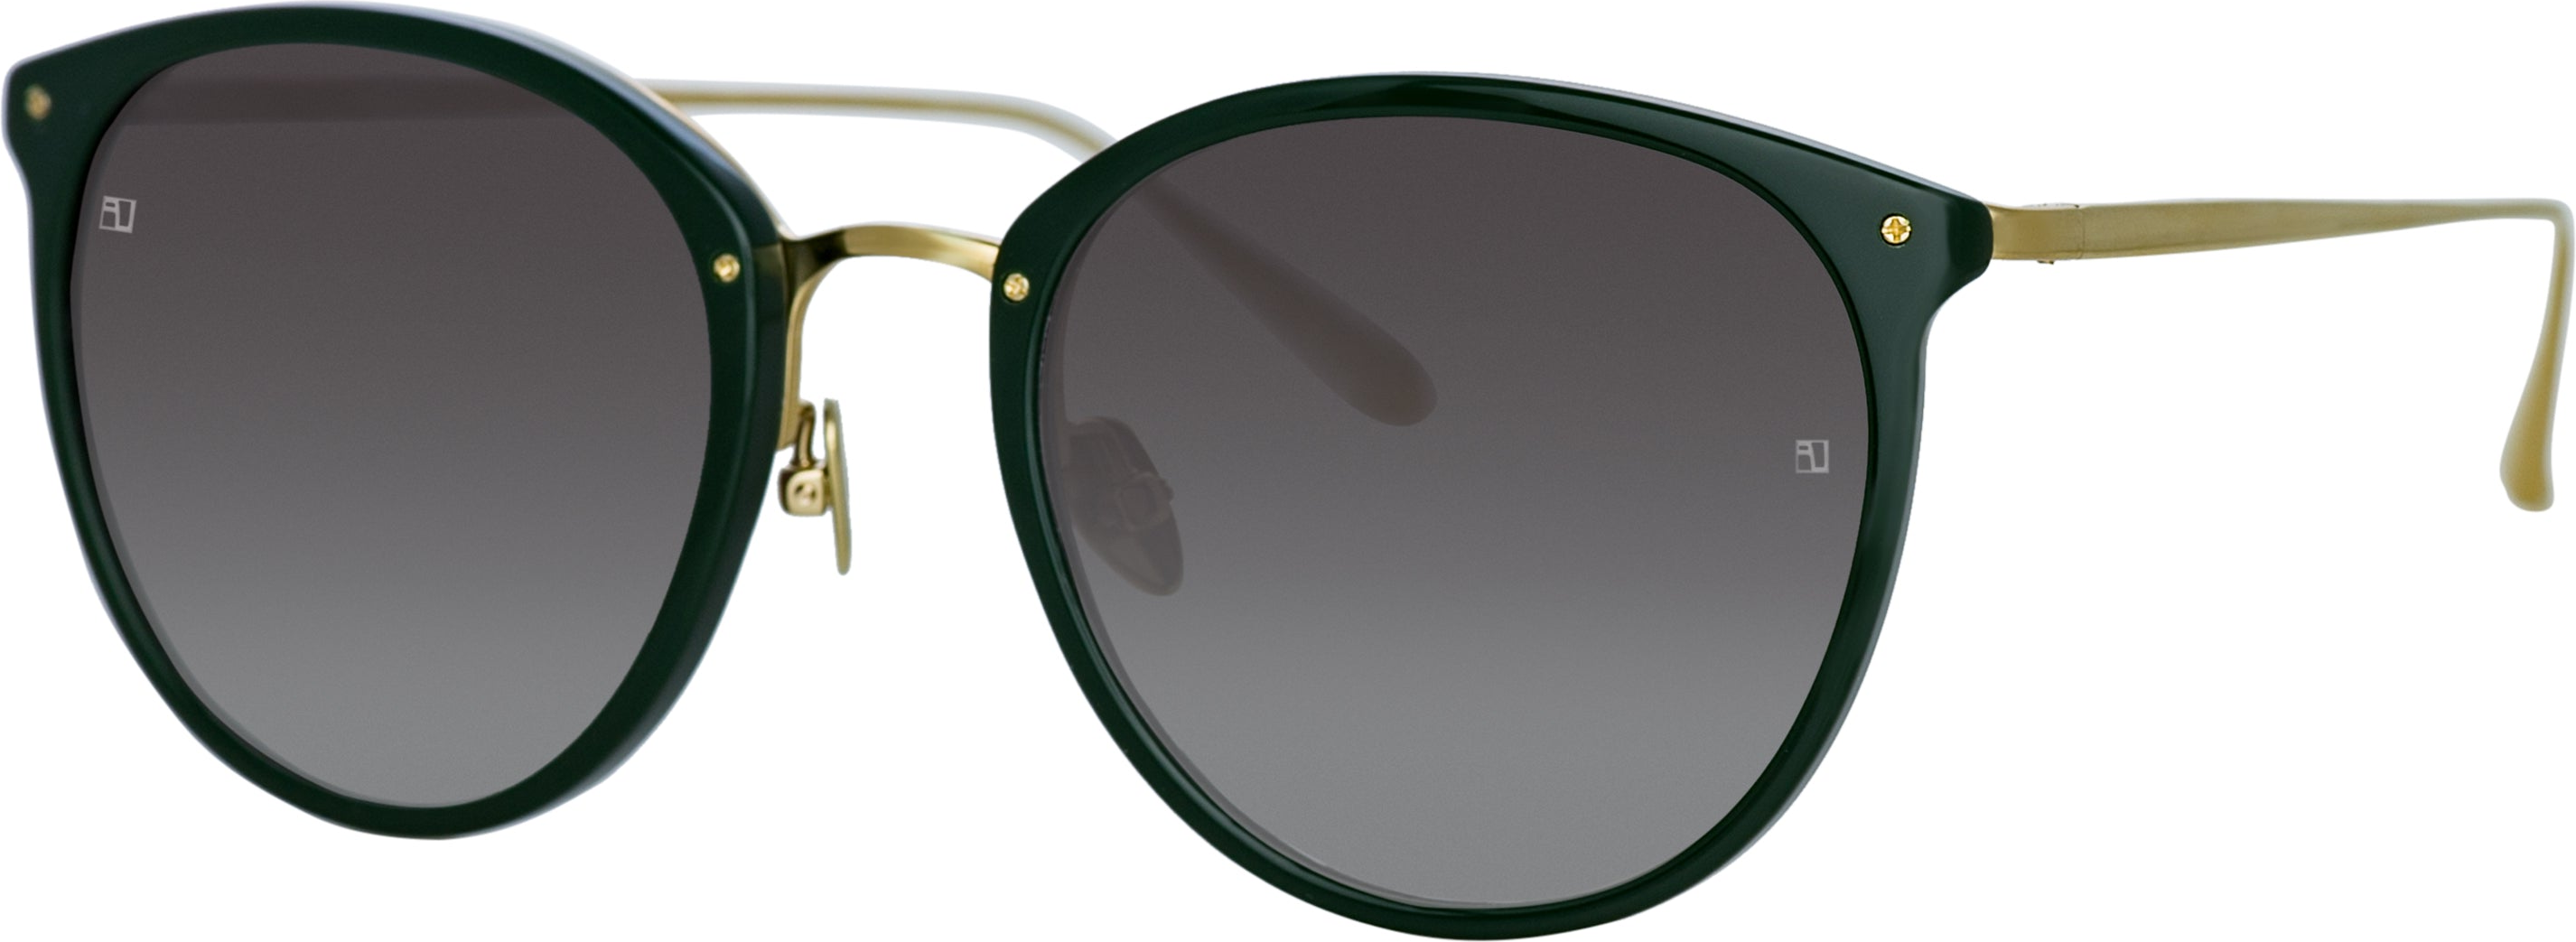 Color_LFL251C80SUN - Calthorpe Oval Sunglasses in Green